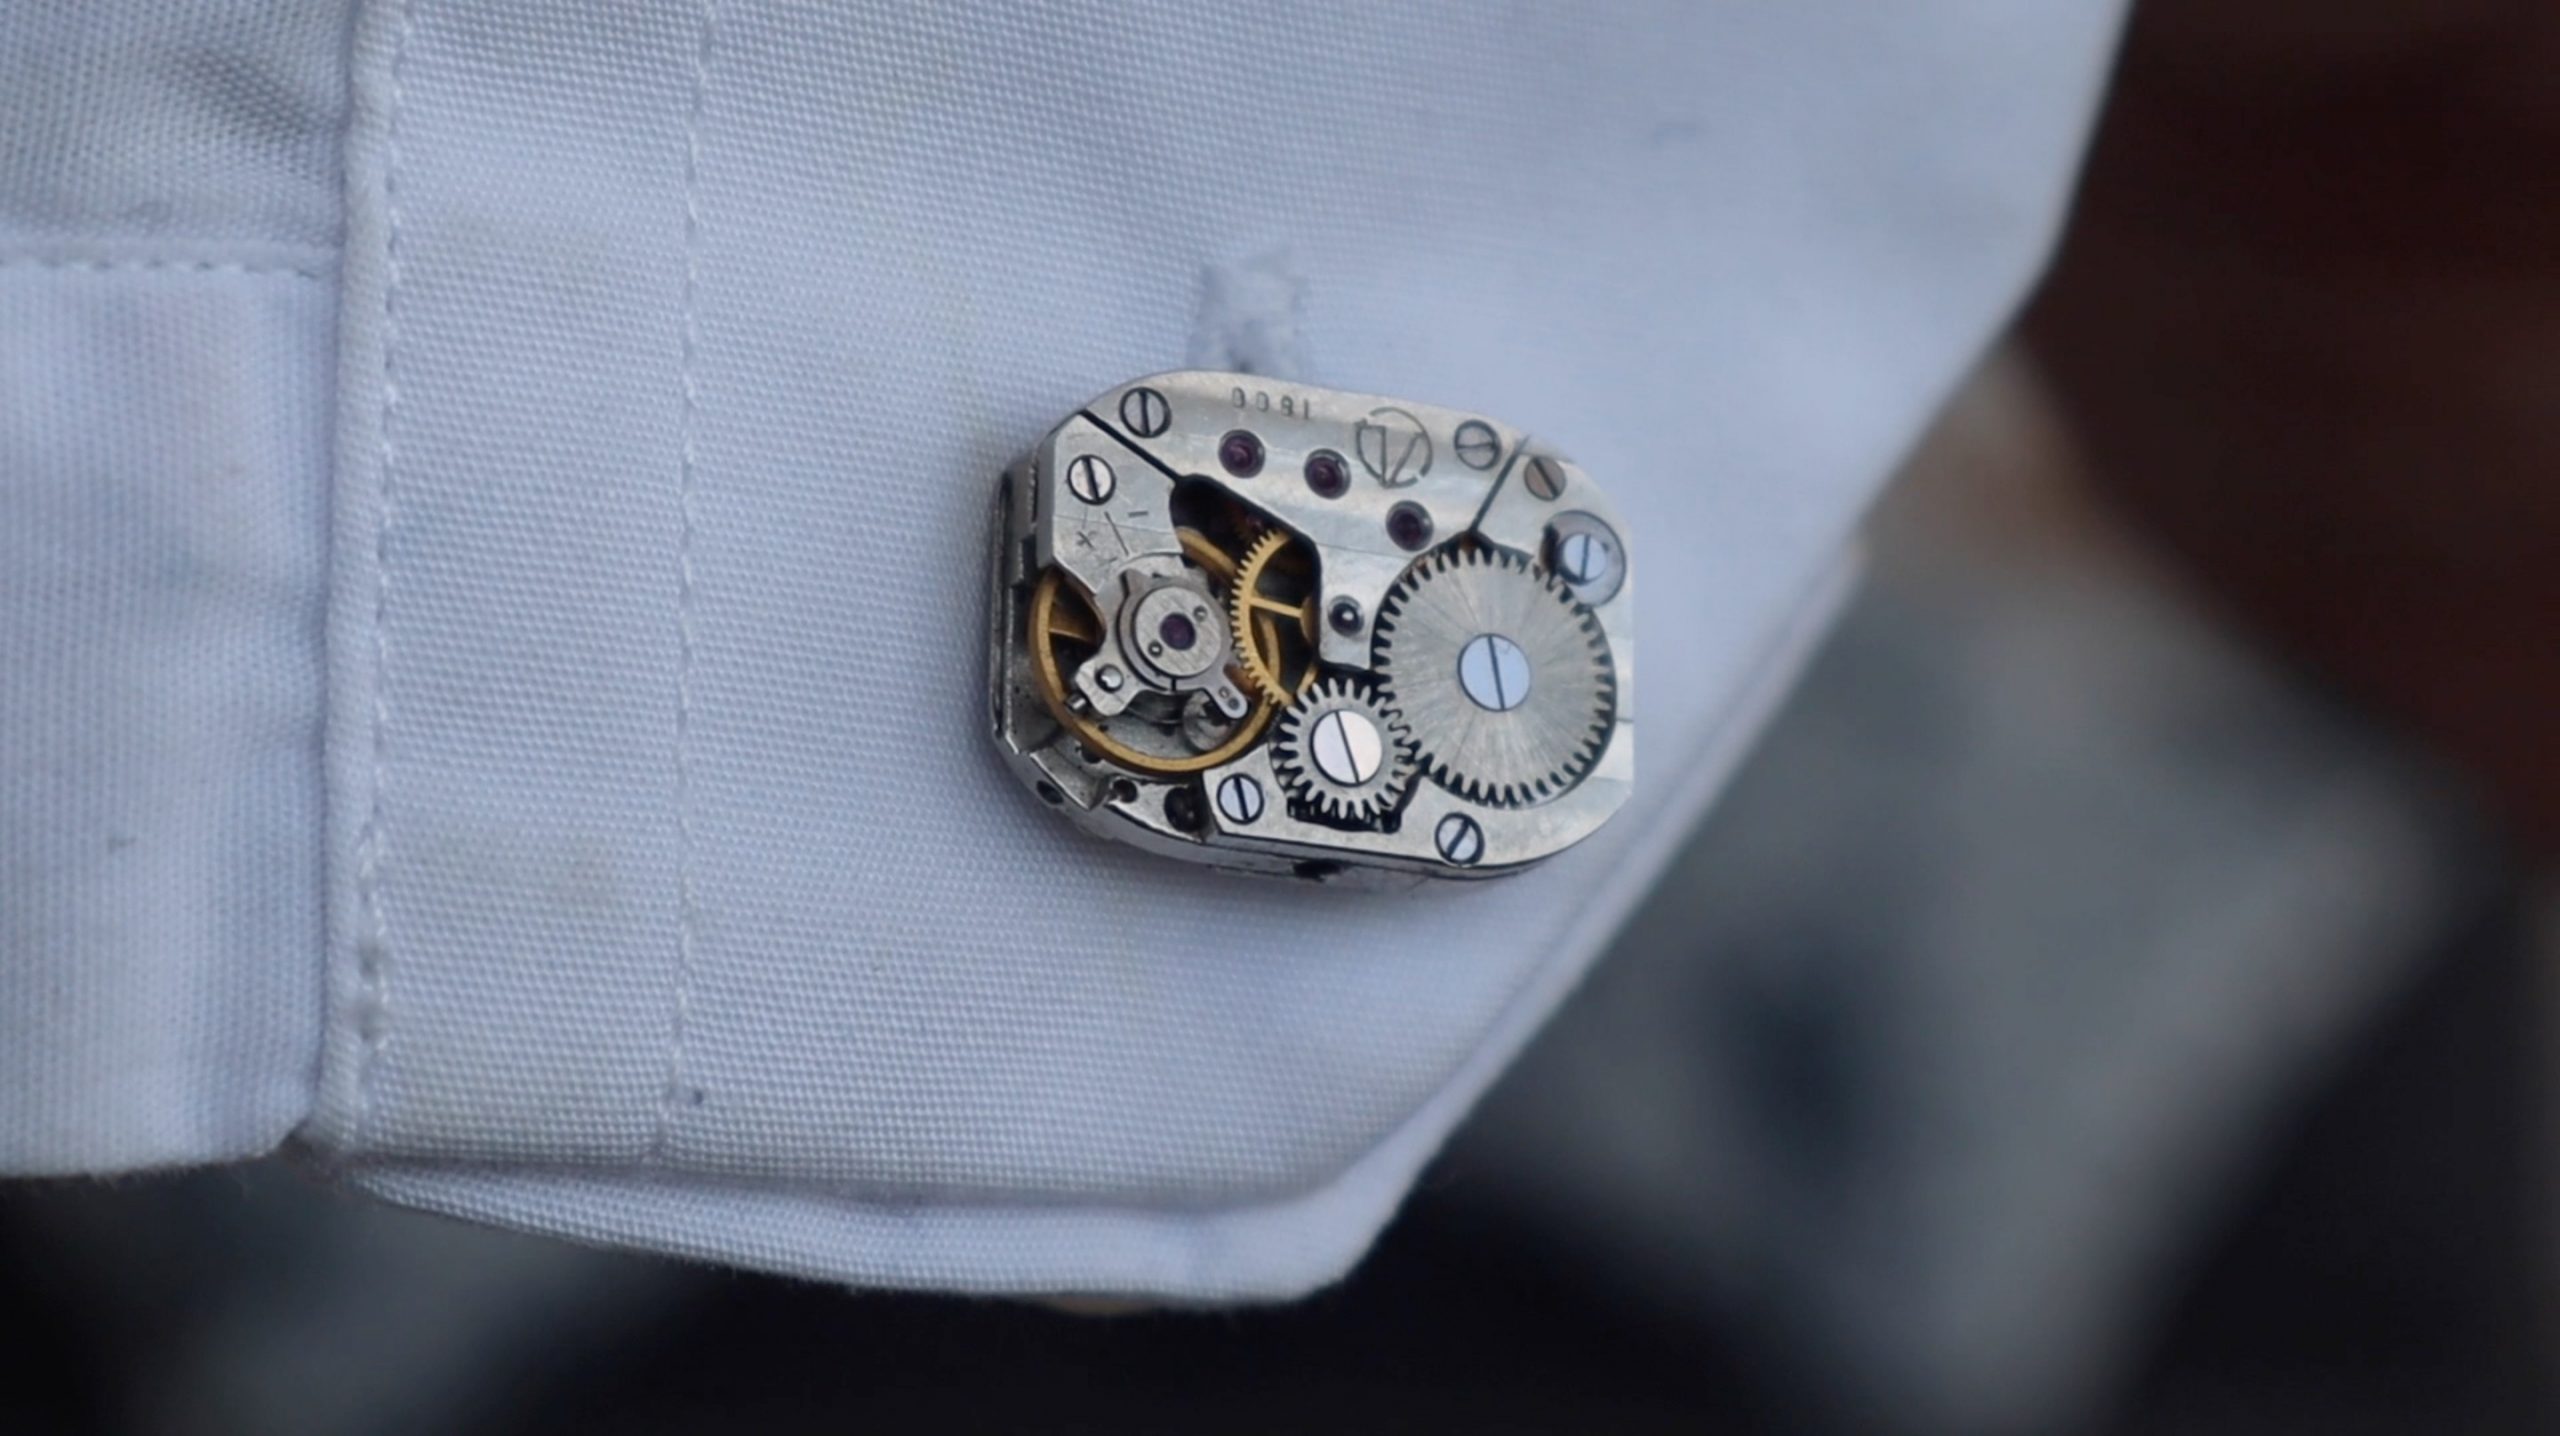 Mechanical Watch Movement Cufflinks on Shirt